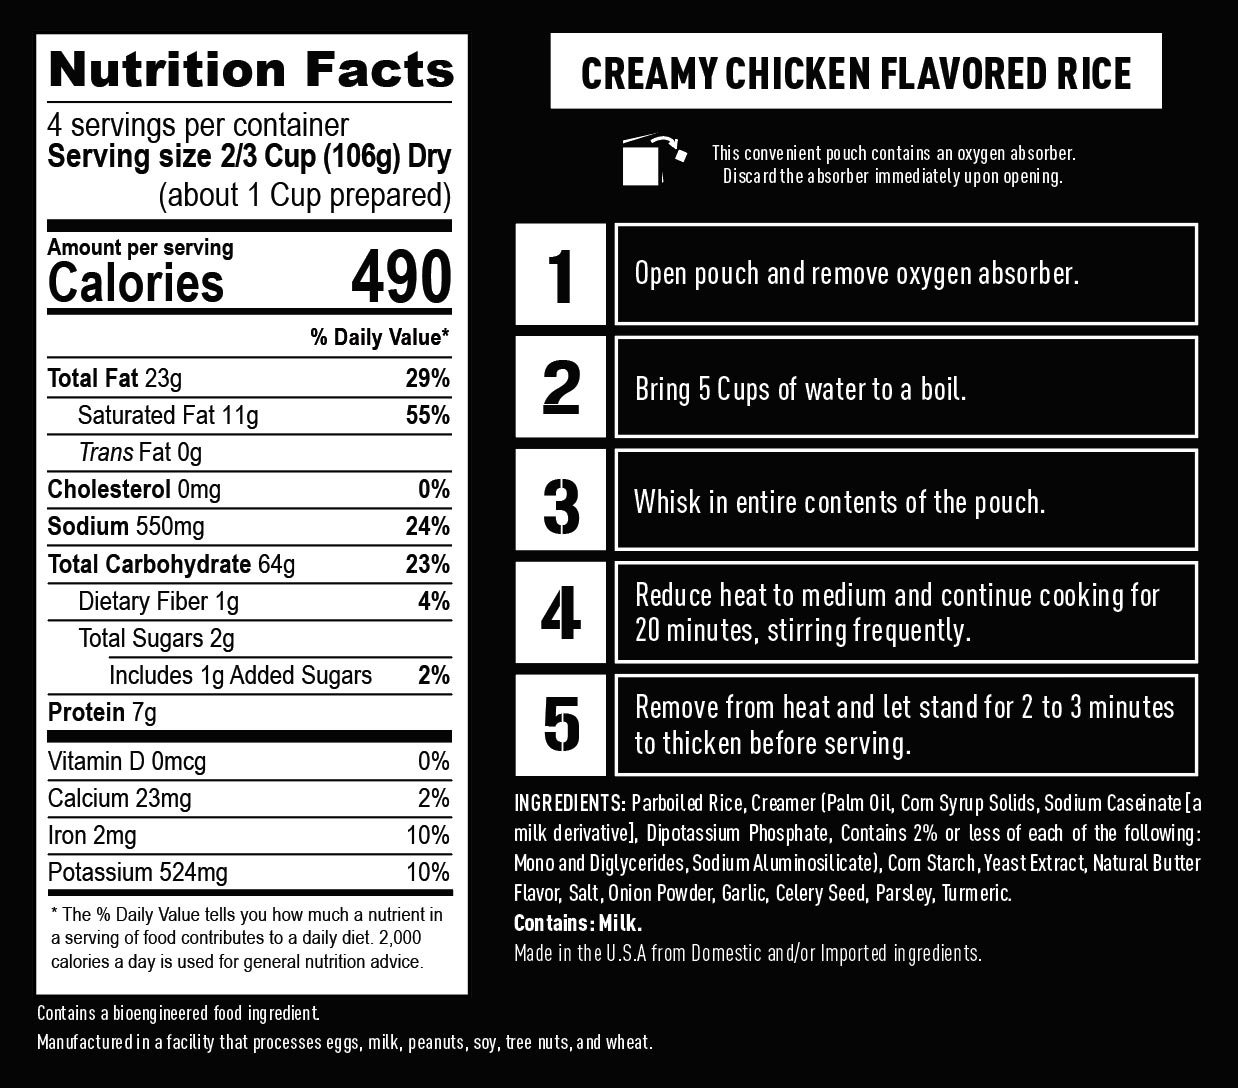 Creamy Chicken Flavored Rice